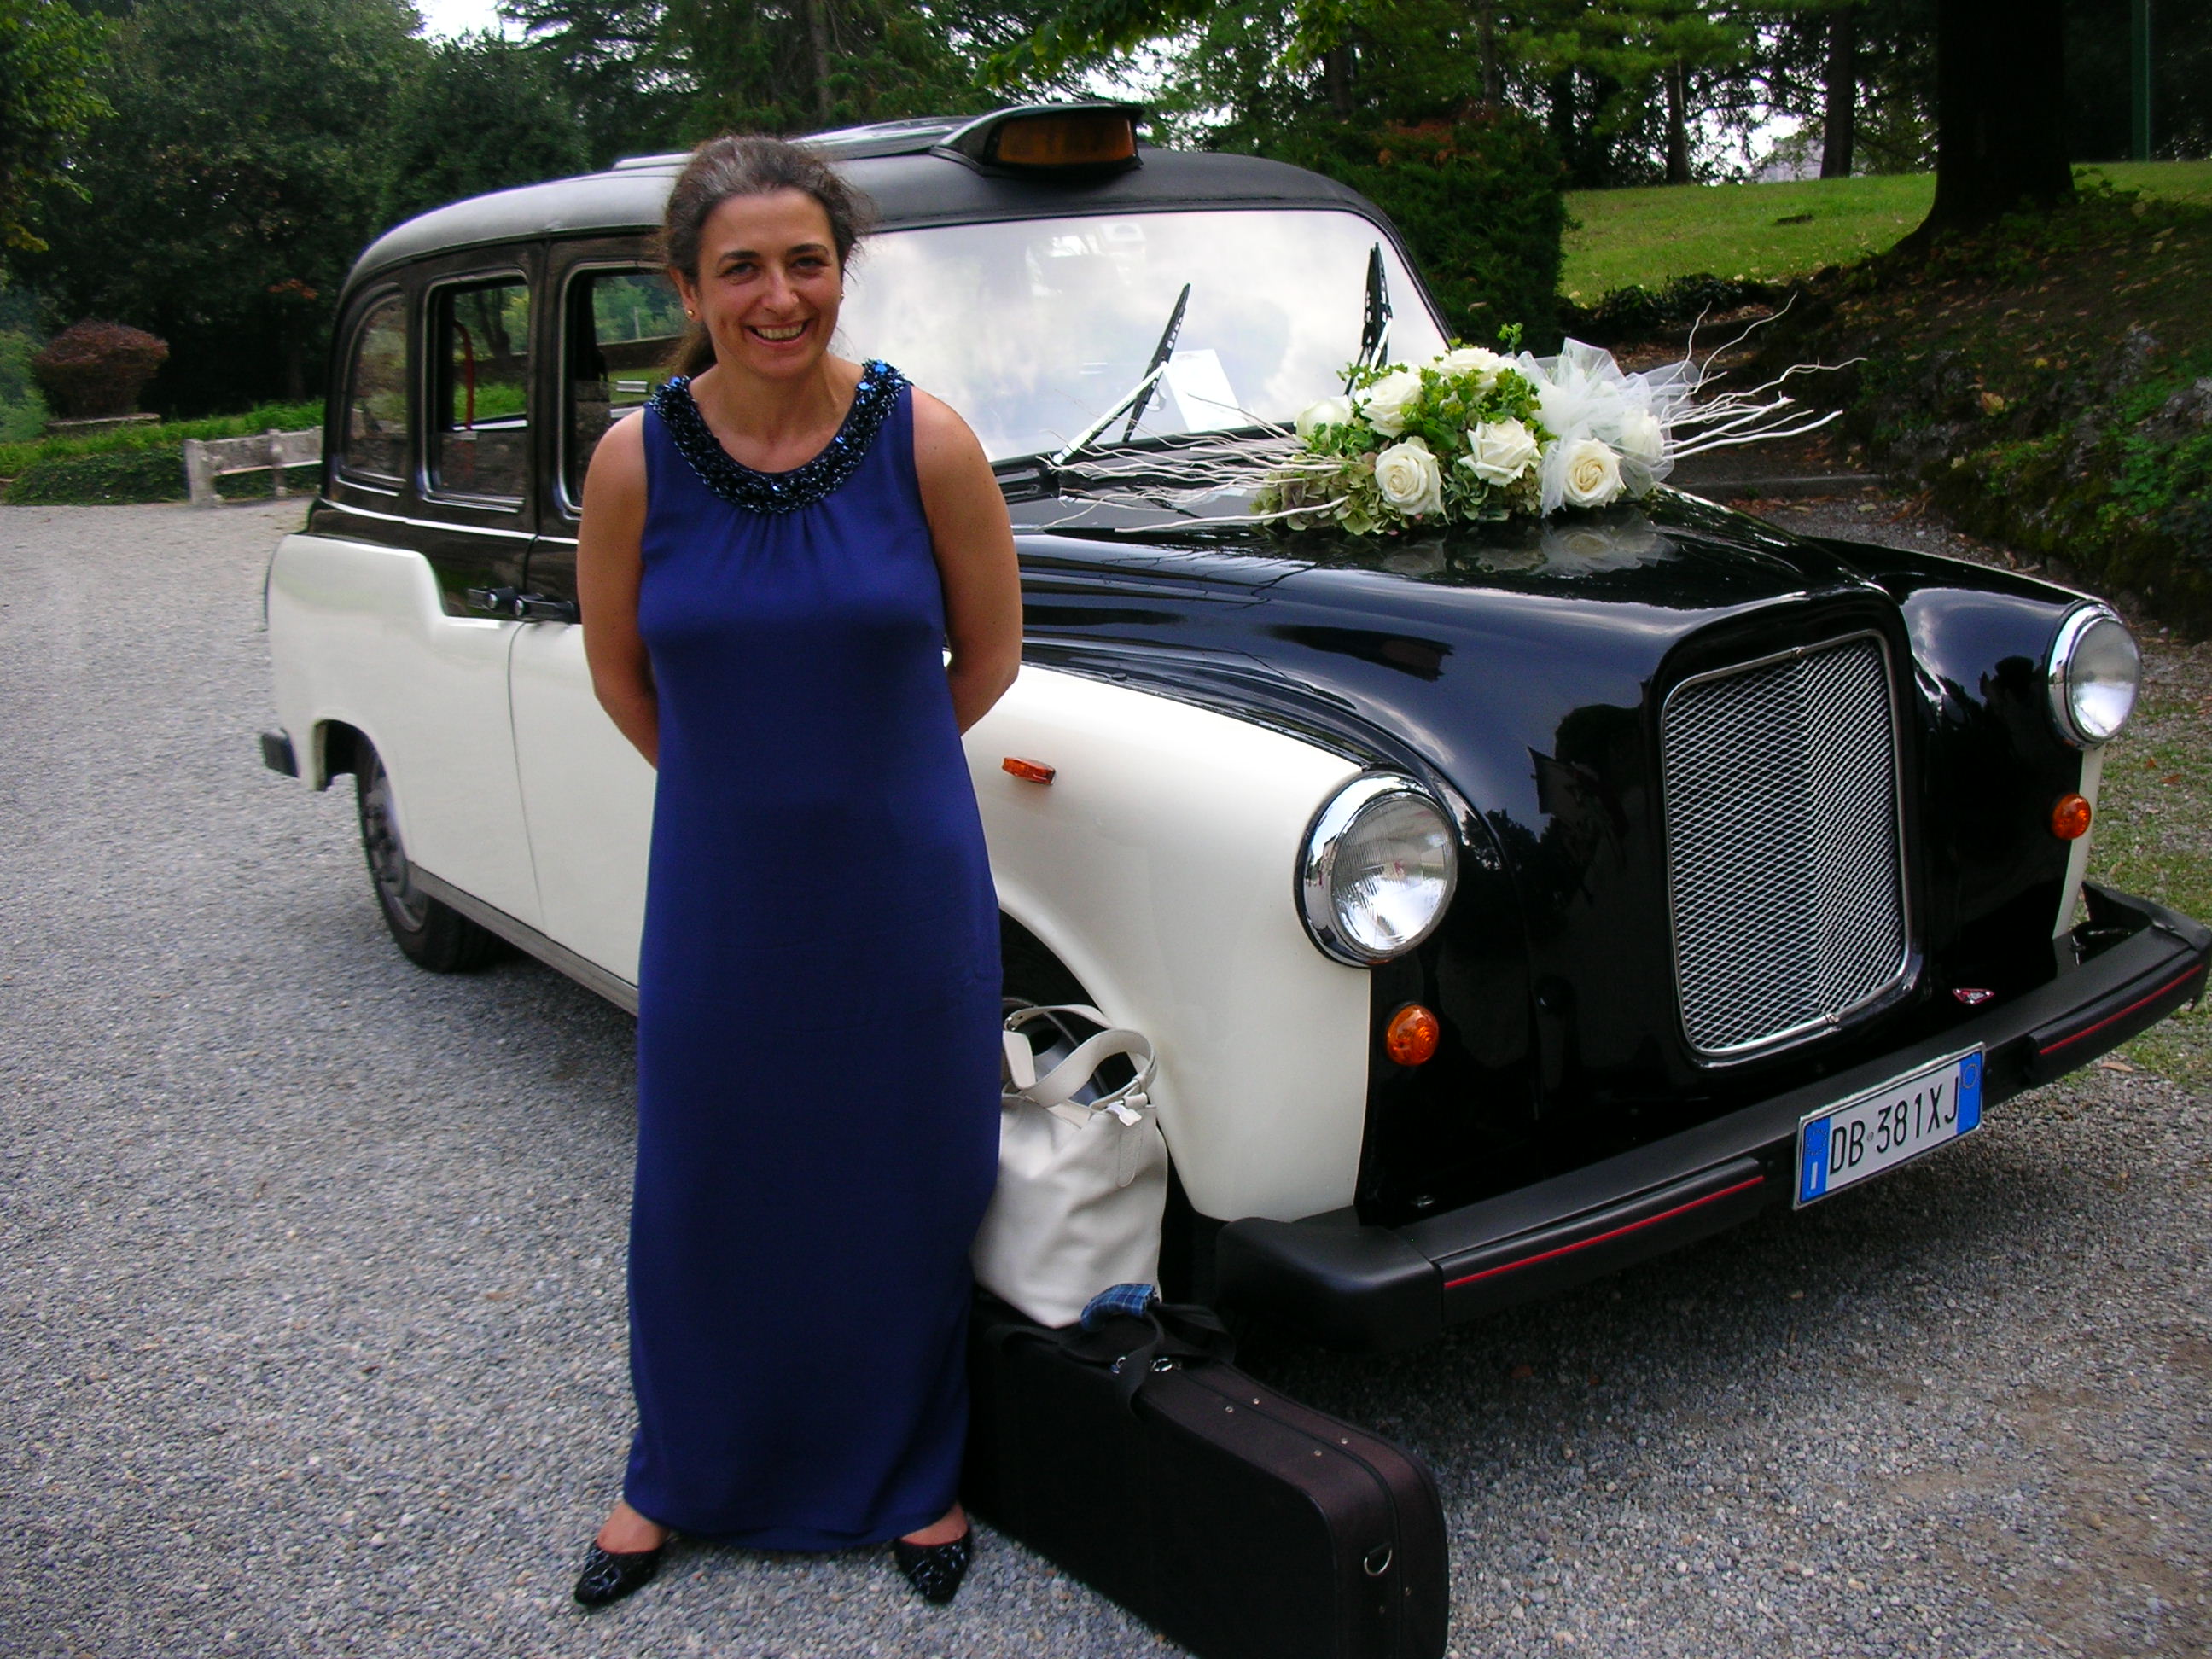 Un'auto originale per il matrimonio: un taxi inglese opportunamente adattato, scelto da una coppia di italiani residenti in inghilterra, sposati in Italia